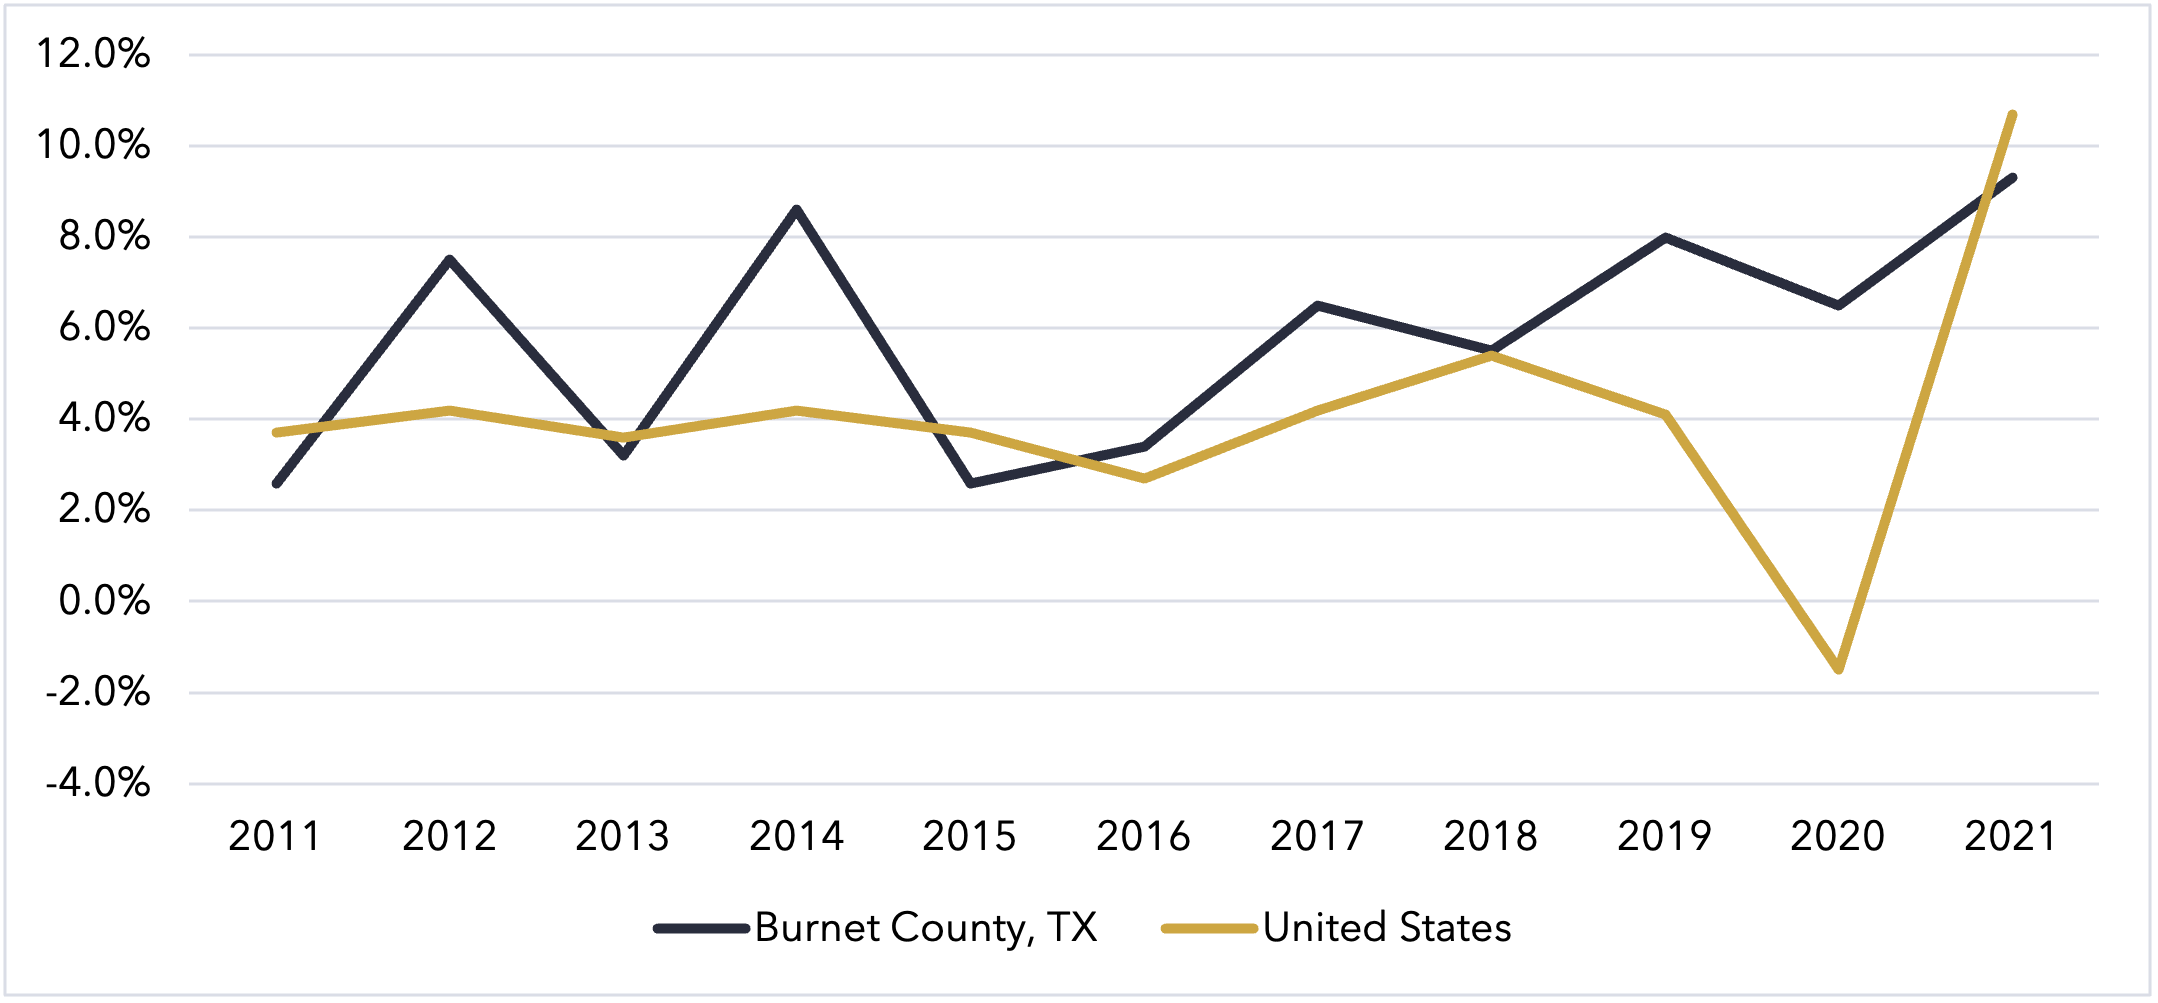 Burnet County, Texas Gross Regional Product Growth 2021